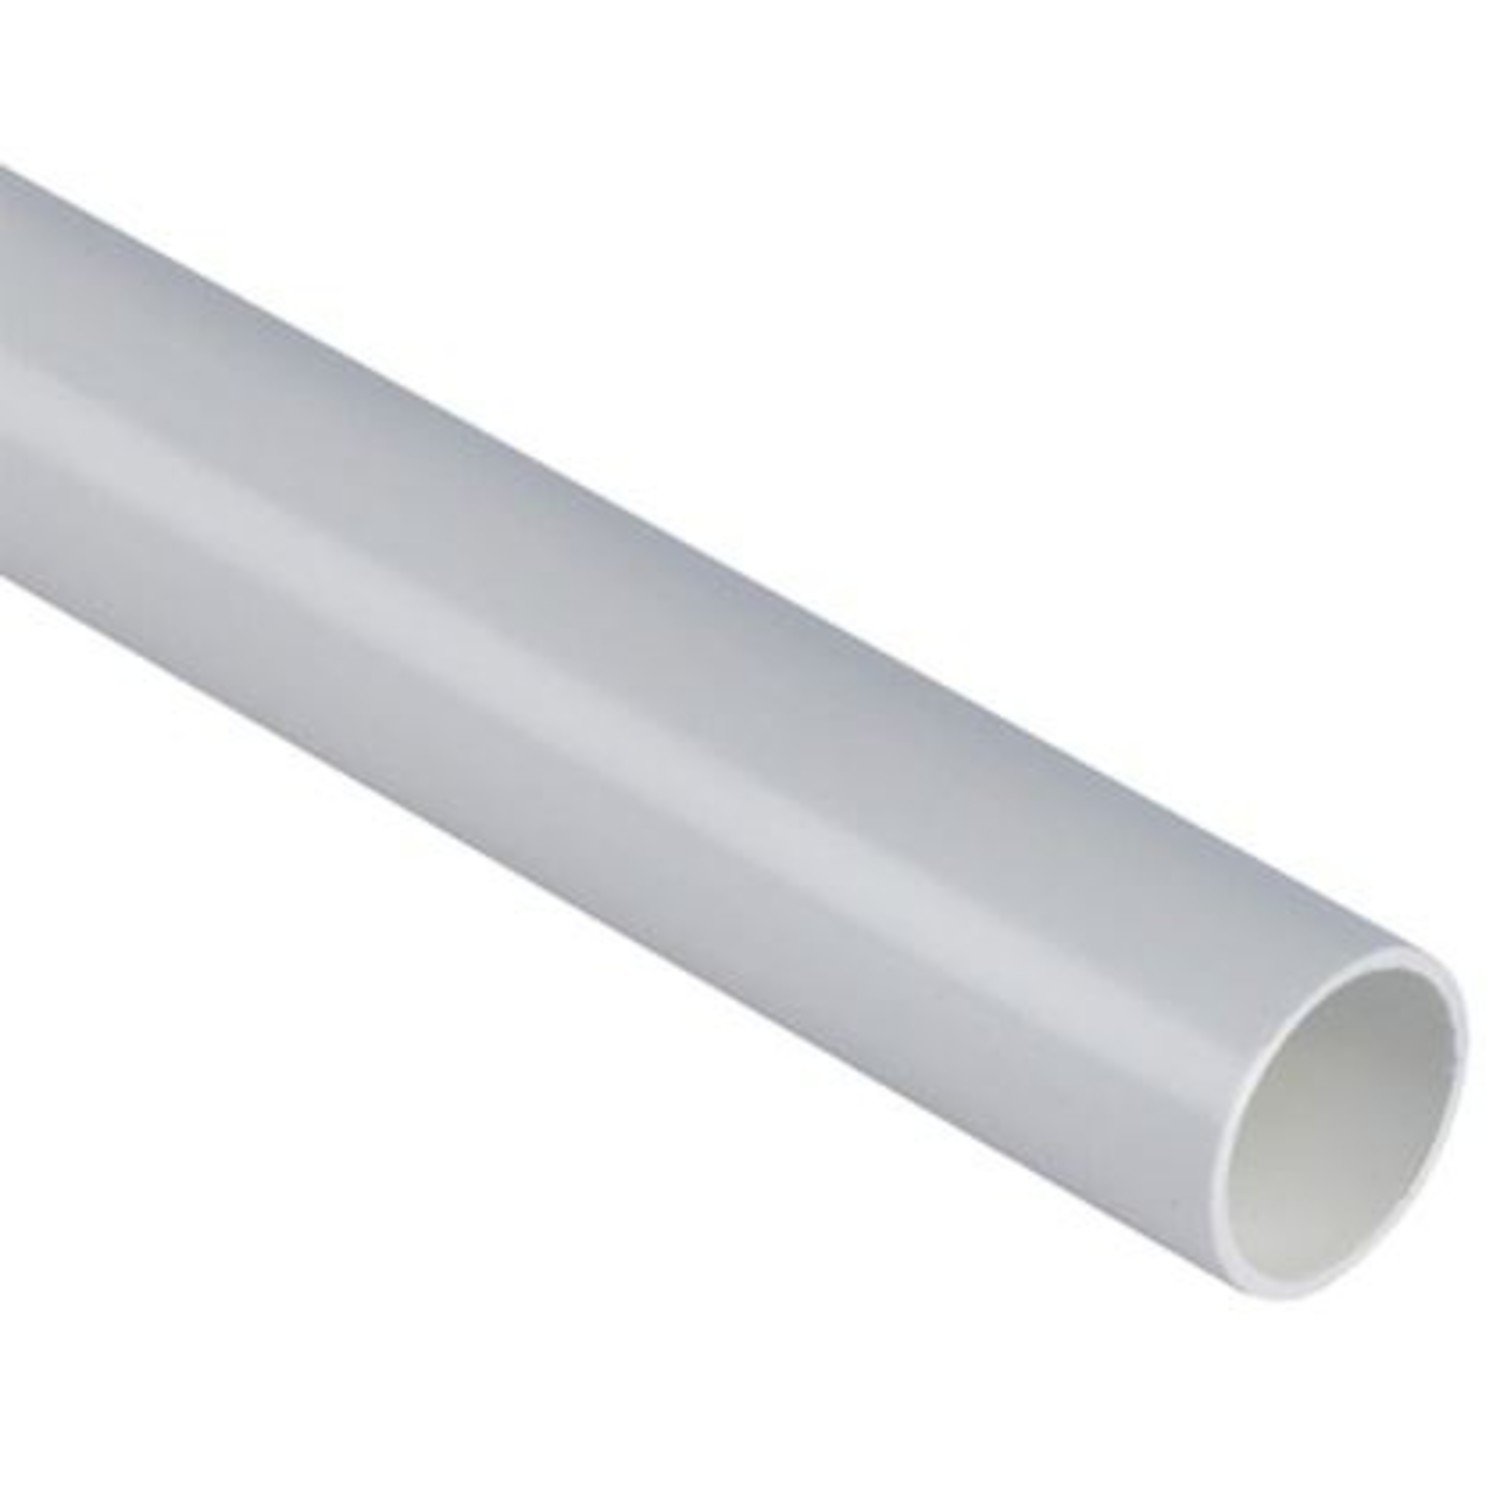 Onderwijs dienblad bevind zich Witte PVC afvoerbuis 32mm L=2m p.p.m. - Mijnklimaatshop.nl